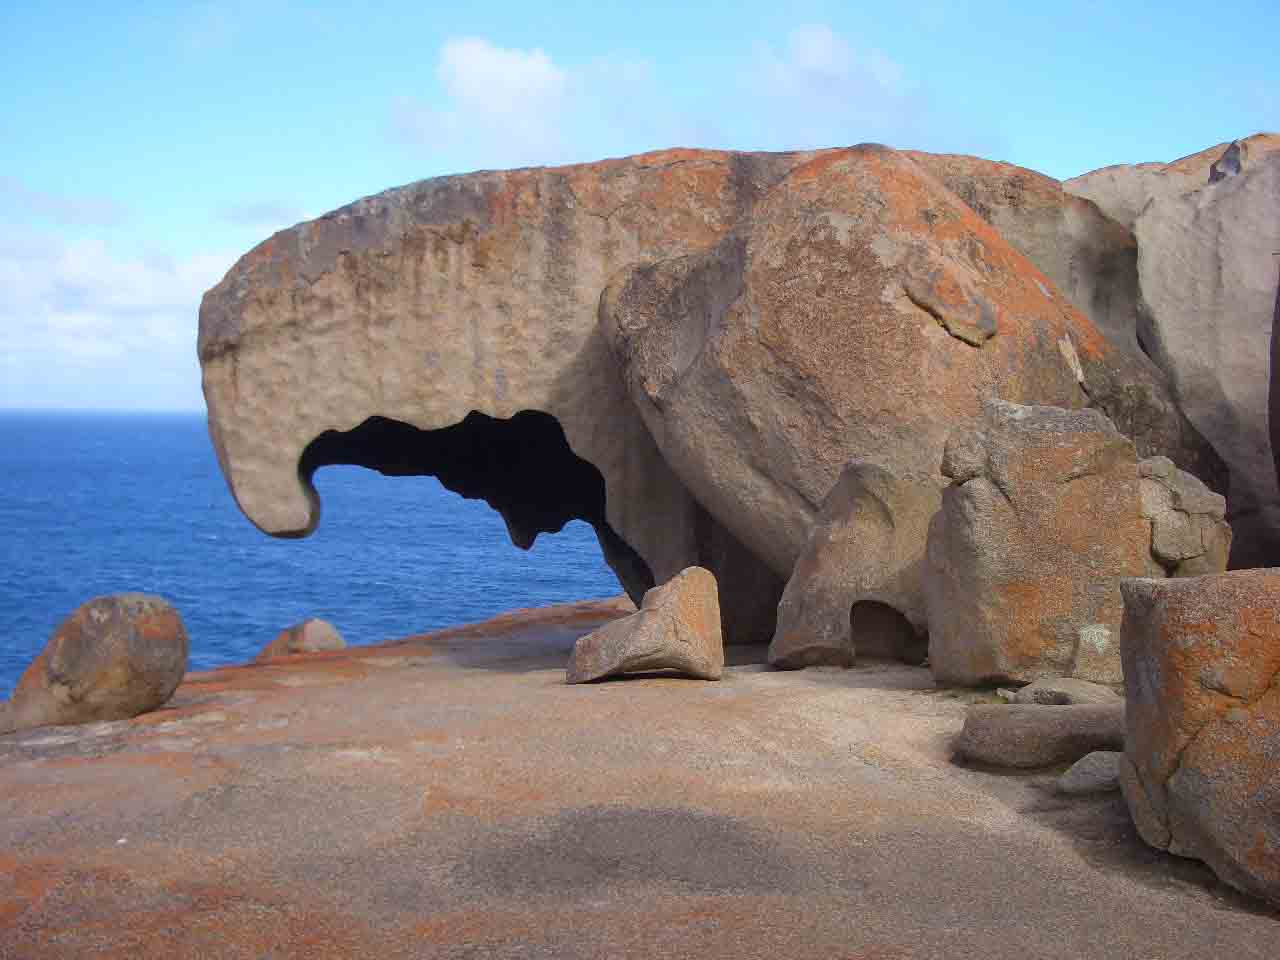 acquila_ questa e' una remarkable rock di kangaro island, qui c'e' talemente tanto vento che rischi di vlre via se non stai atte